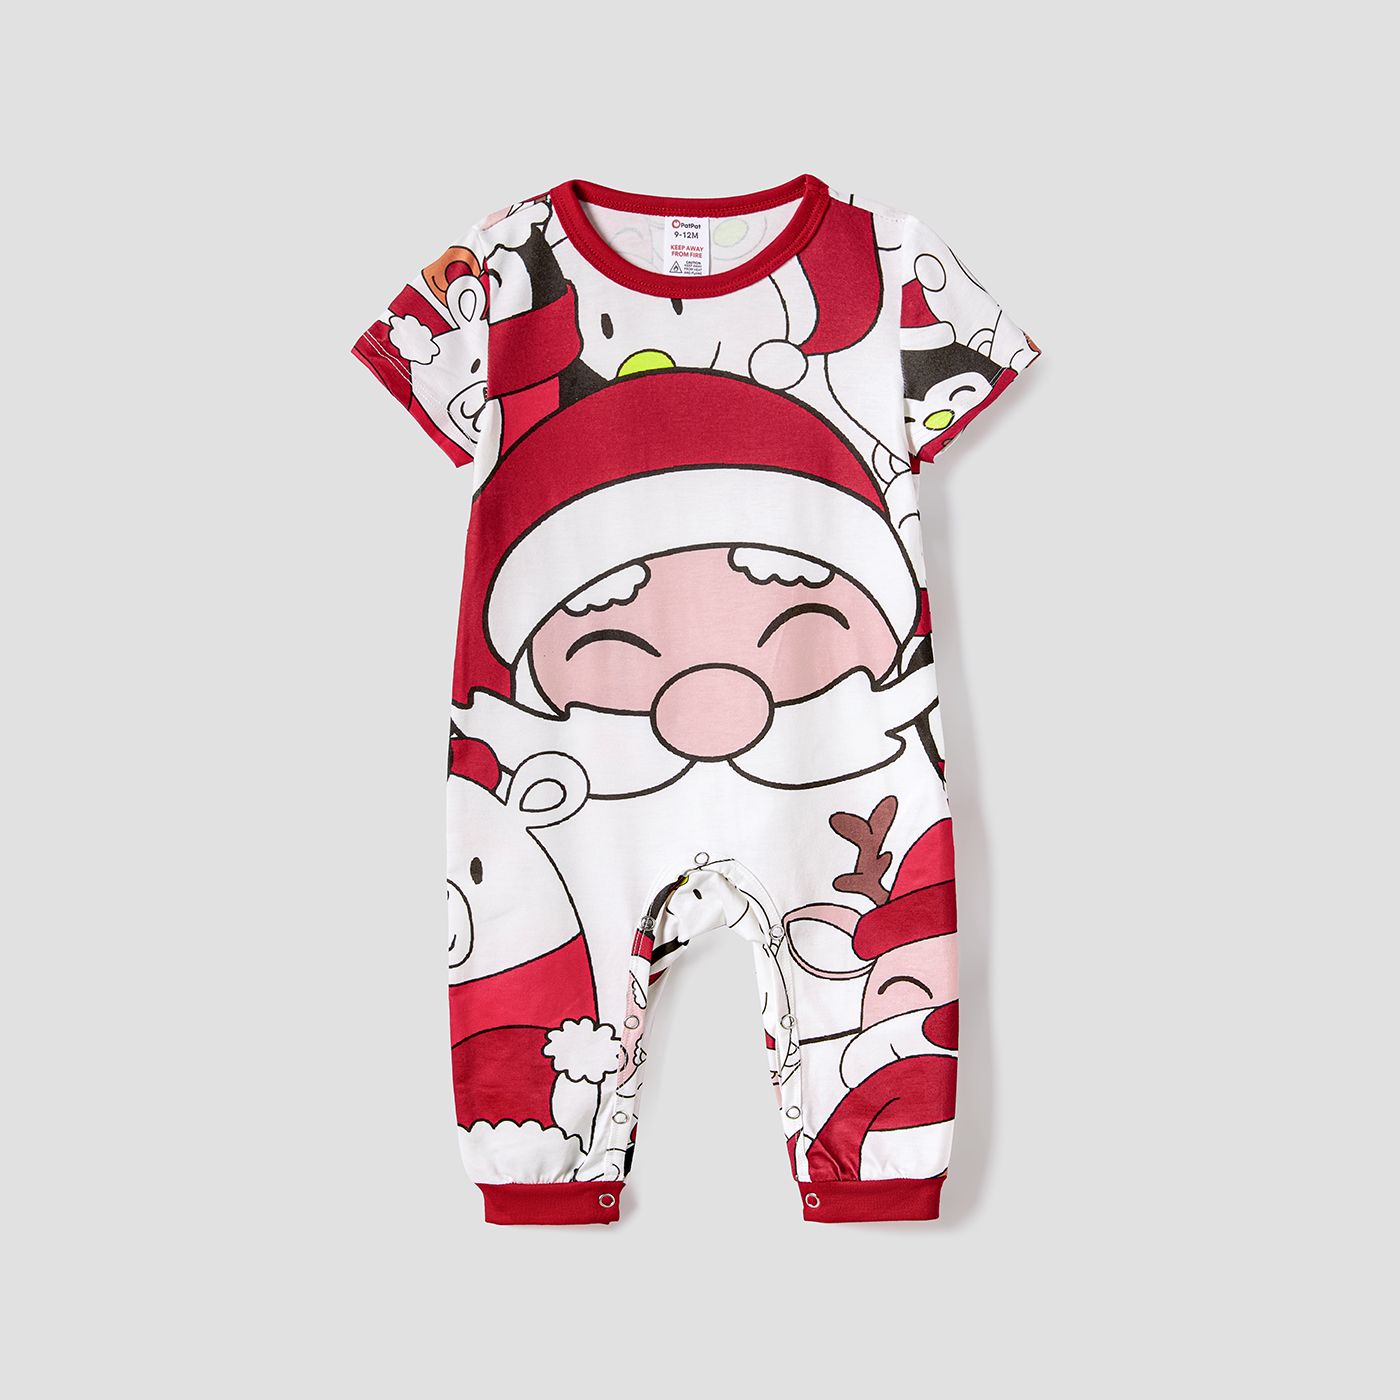 Christmas Santa and Snowman Print Family Matching Short-sleeve Tops and Shorts Pajamas Sets (Flame R